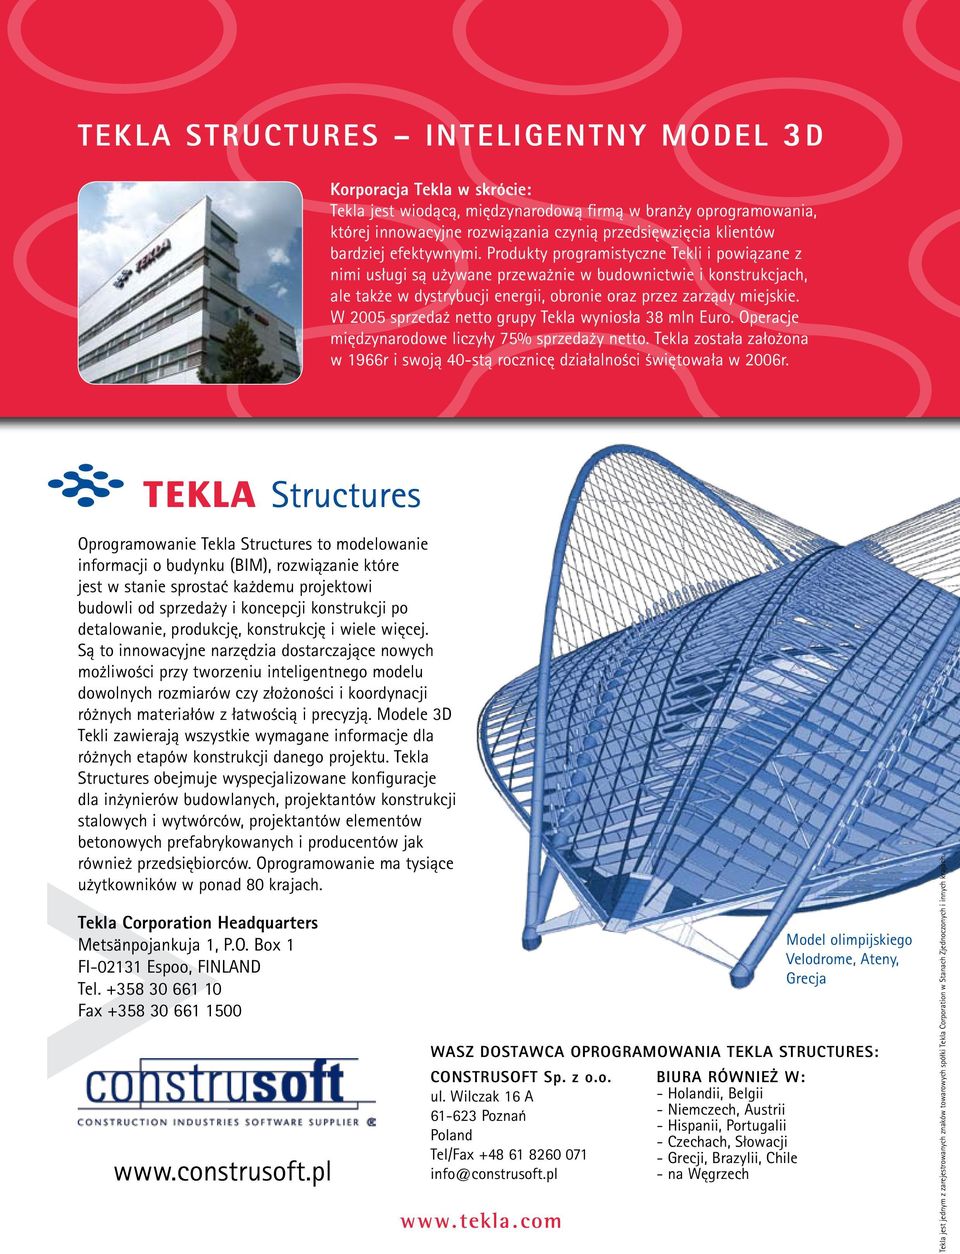 Produkty programistyczne Tekli i powiązane z nimi usługi są używane przeważnie w budownictwie i konstrukcjach, ale także w dystrybucji energii, obronie oraz przez zarządy miejskie.